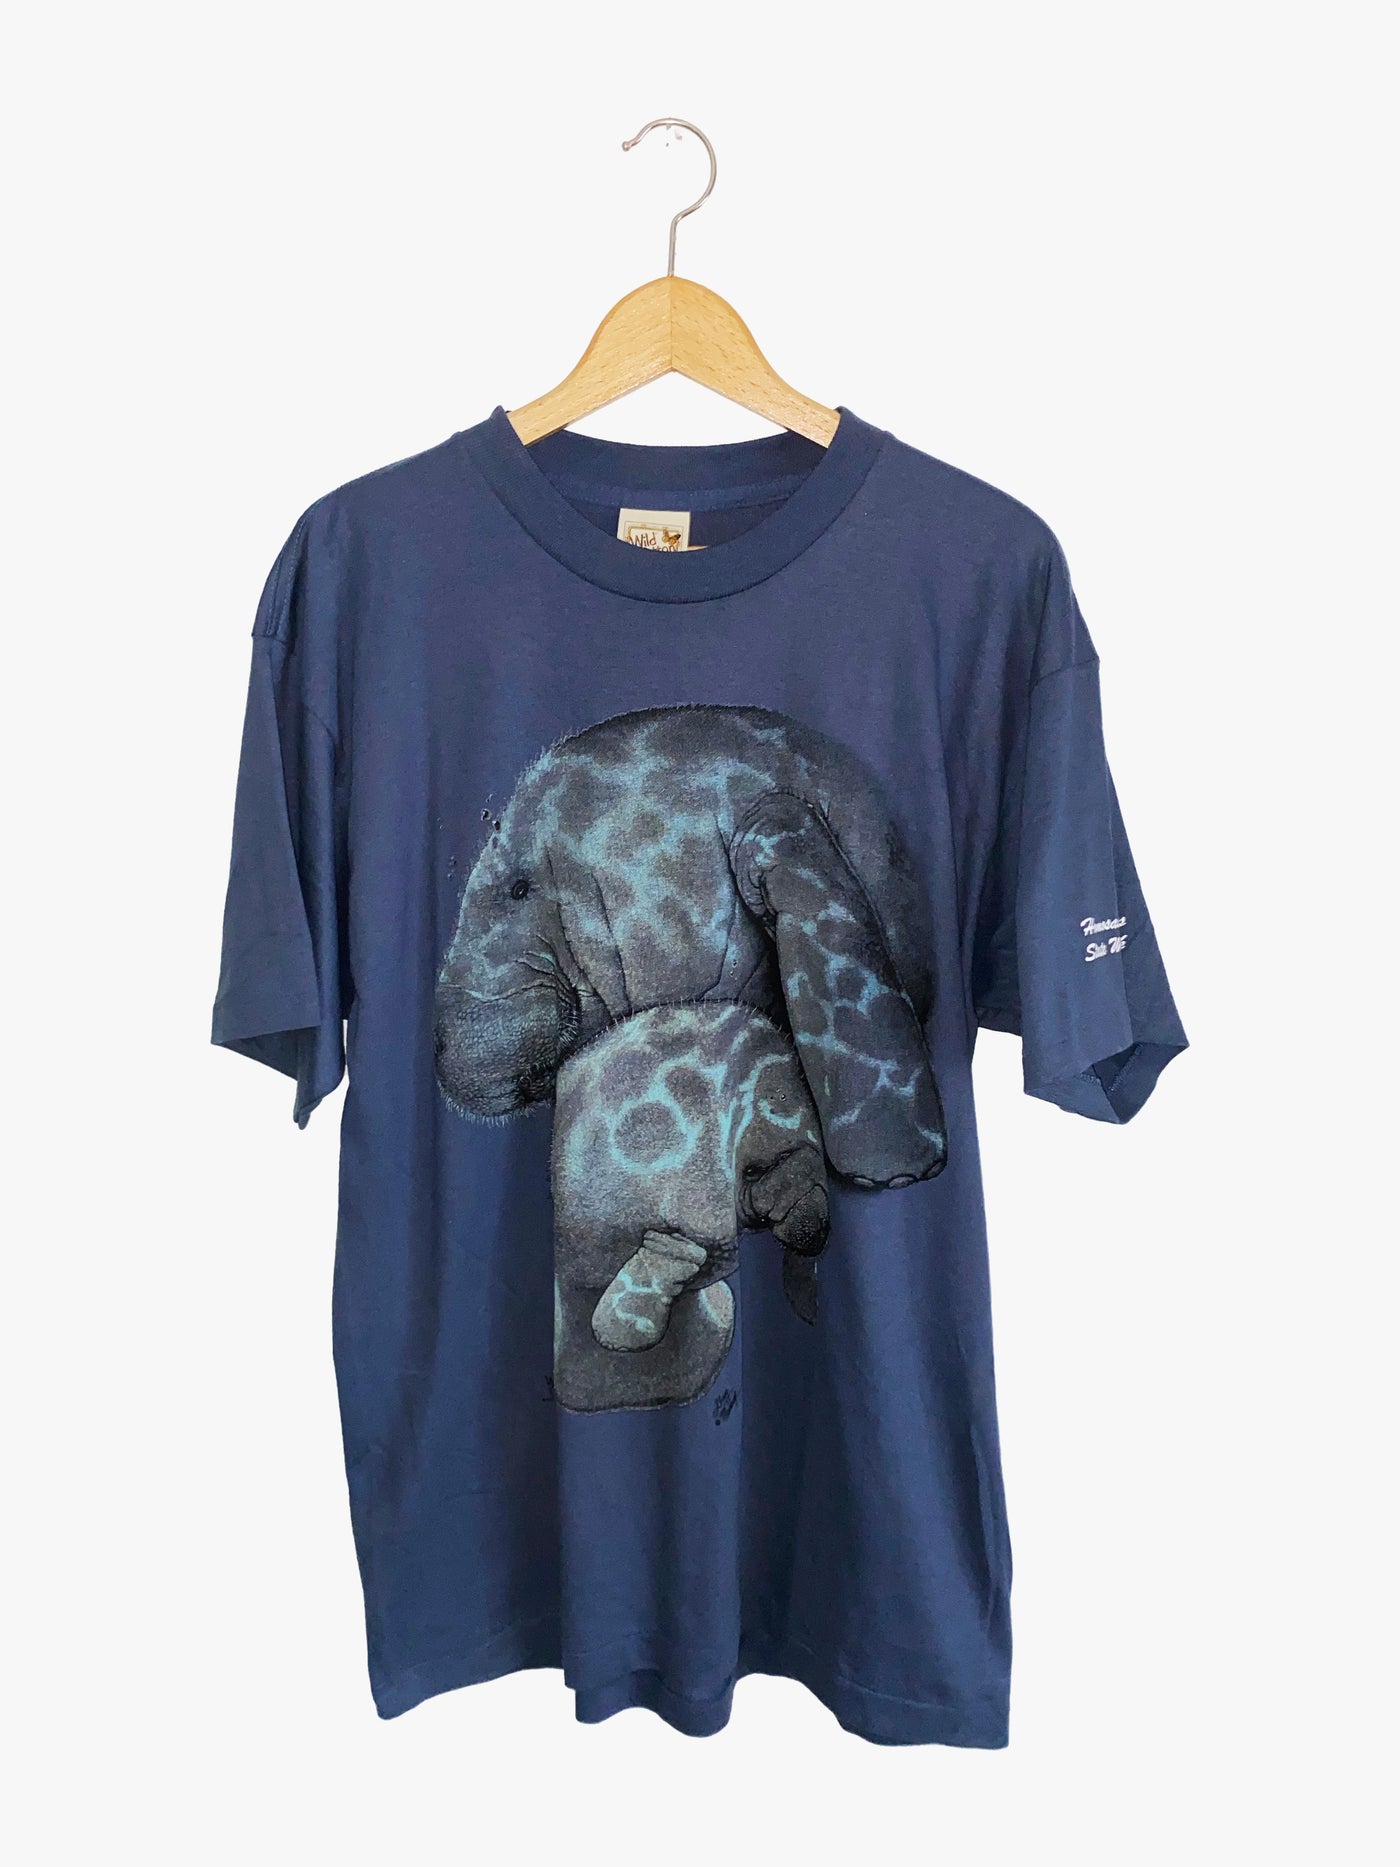 Vintage 1999 Wild Cotton Sea Lion T-Shirt